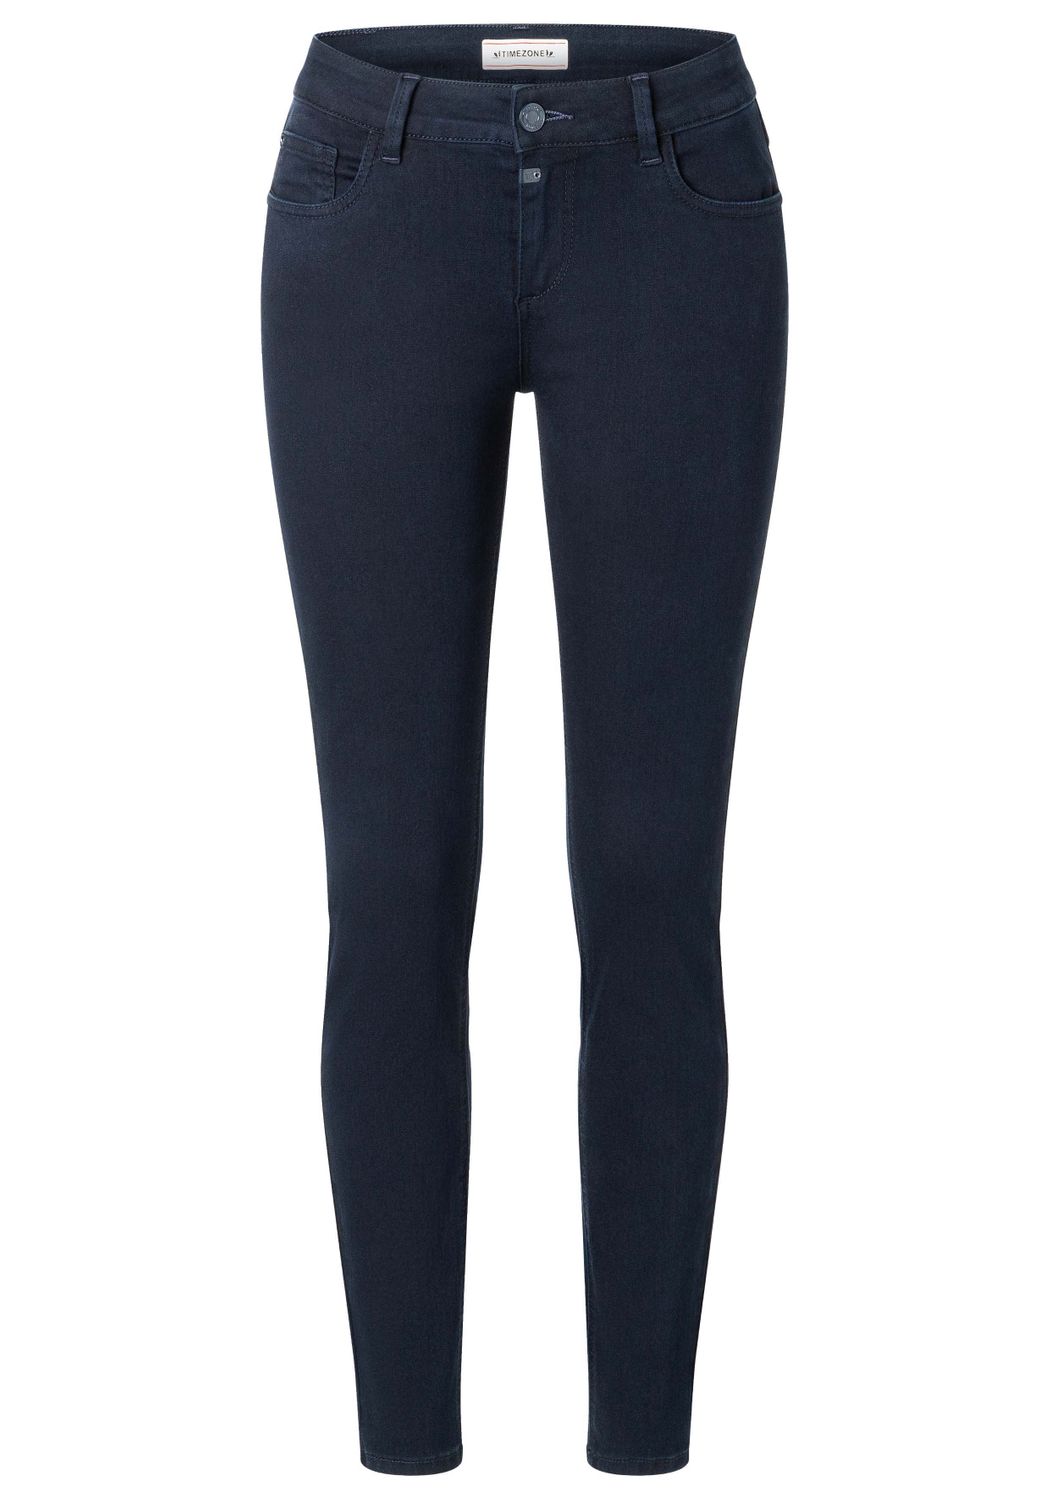 TIMEZONE Damen Jeans TIGHT ALEENATZTZ - Tight Fit - Blau - Cosmos Blue Wash günstig online kaufen